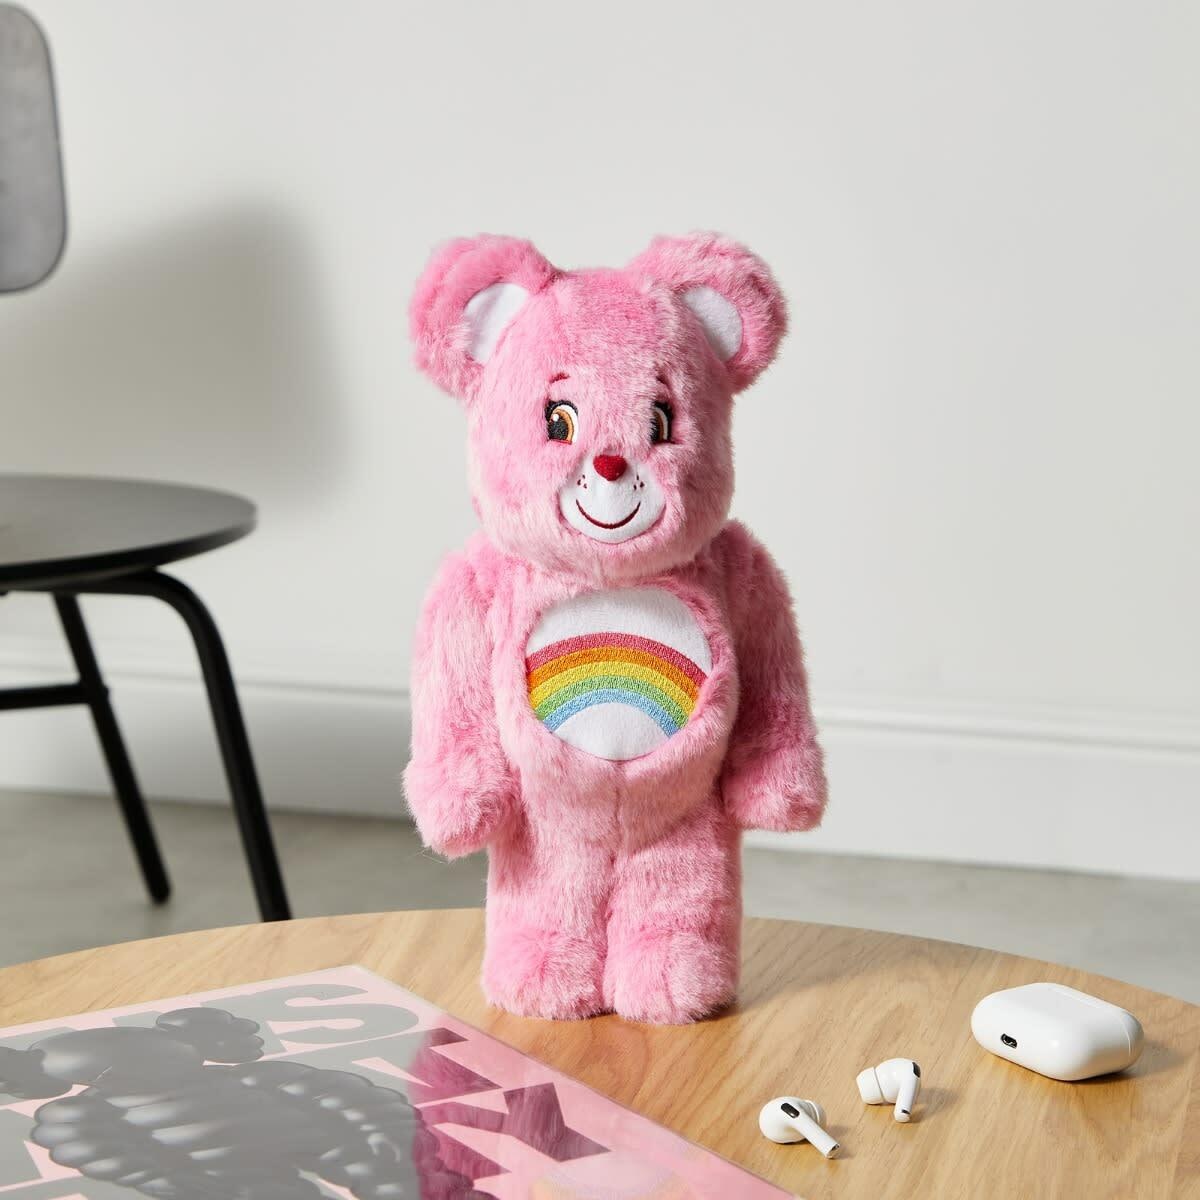 Medicom Cheer Bear Costume Version Be@rbrick in Pink 400% Medicom